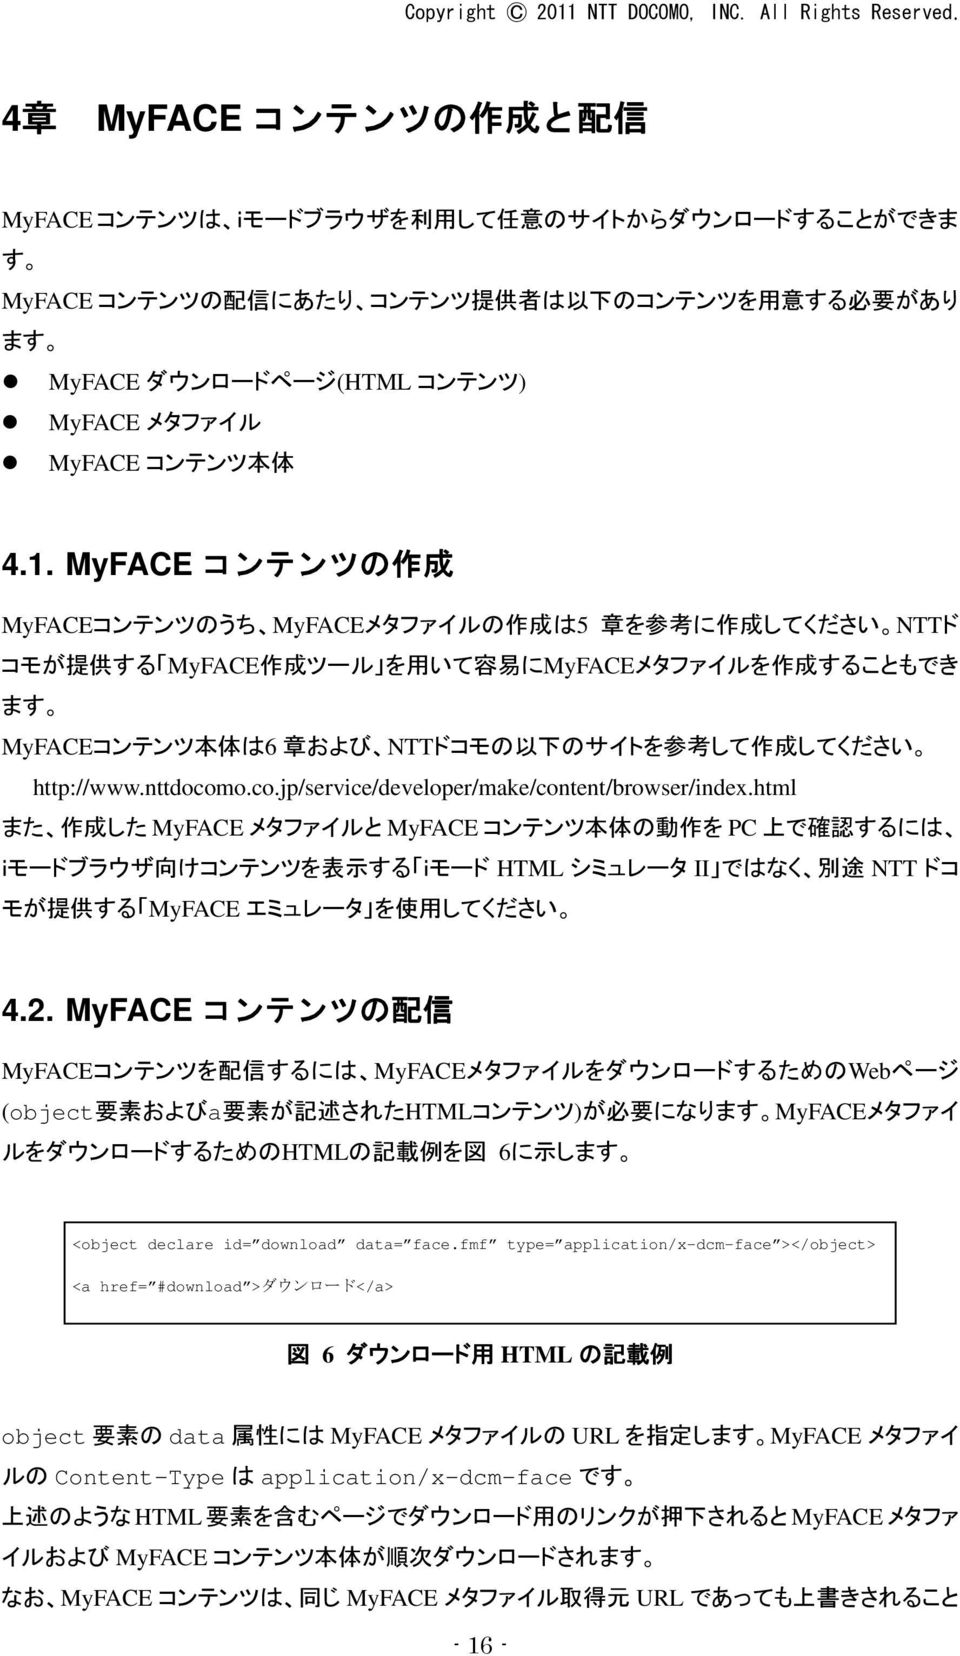 MyFACE コンテンツの 作 成 MyFACEコンテンツのうち MyFACEメタファイルの 作 成 は5 章 を 参 考 に 作 成 してください NTTド コモが 提 供 する MyFACE 作 成 ツール を 用 いて 容 易 にMyFACEメタファイルを 作 成 することもでき ます MyFACEコンテンツ 本 体 は6 章 および NTTドコモの 以 下 のサイトを 参 考 して 作